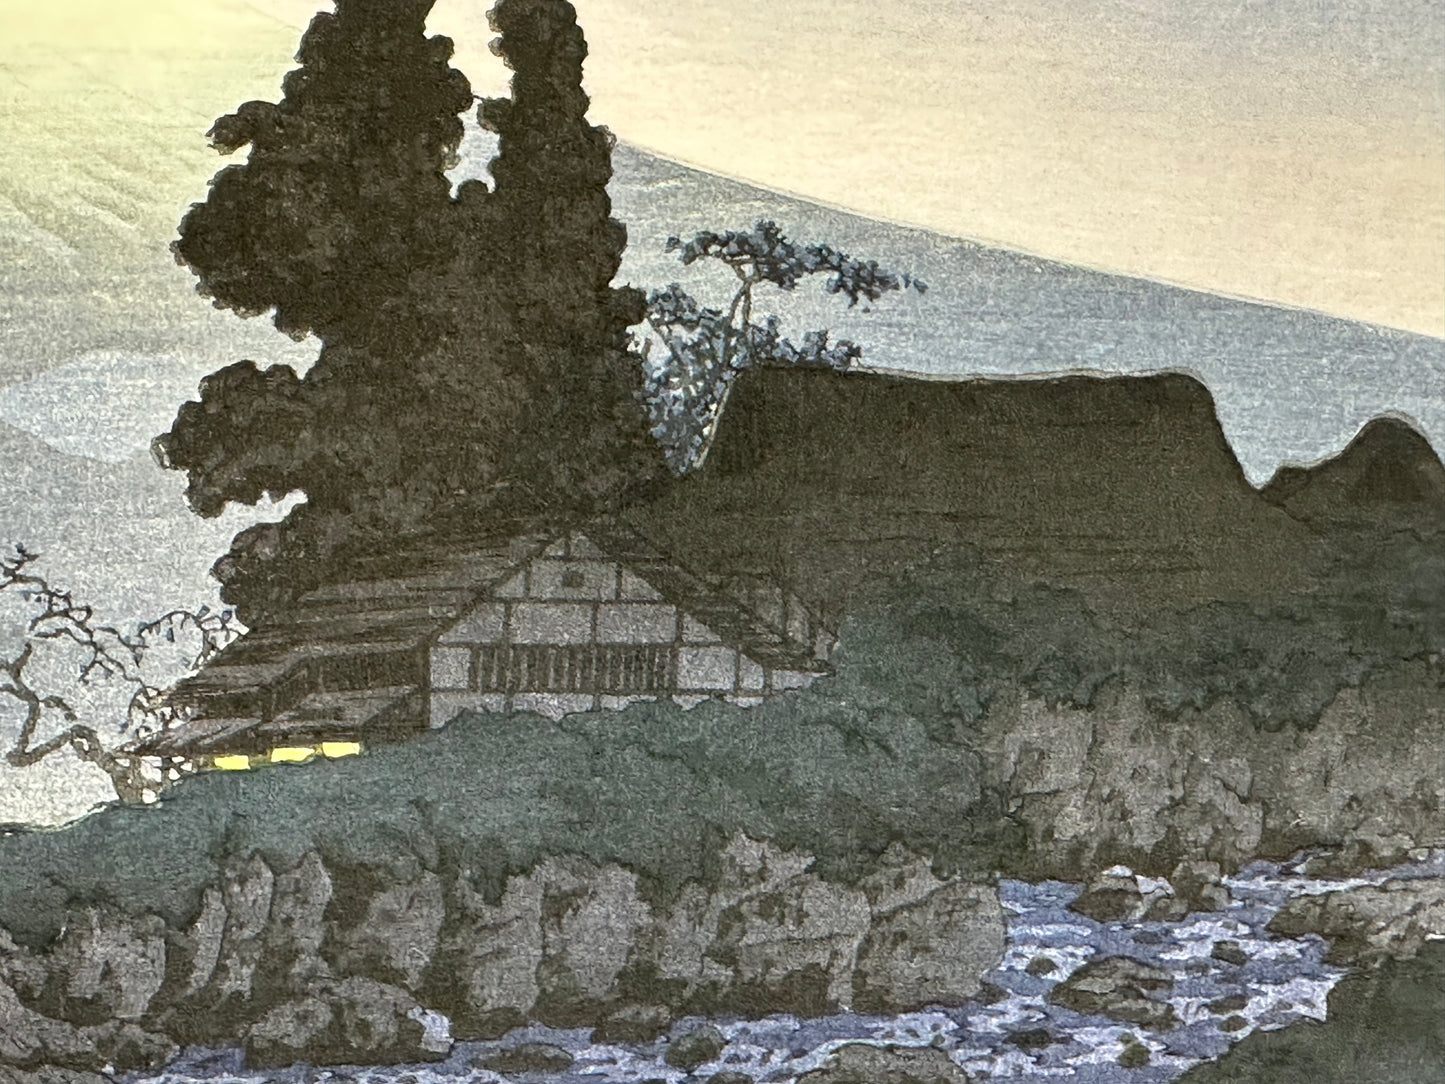 Shotei Takahashi Giclee Woodblock Print Mt Fuji from Mitsukubo 10"x15"